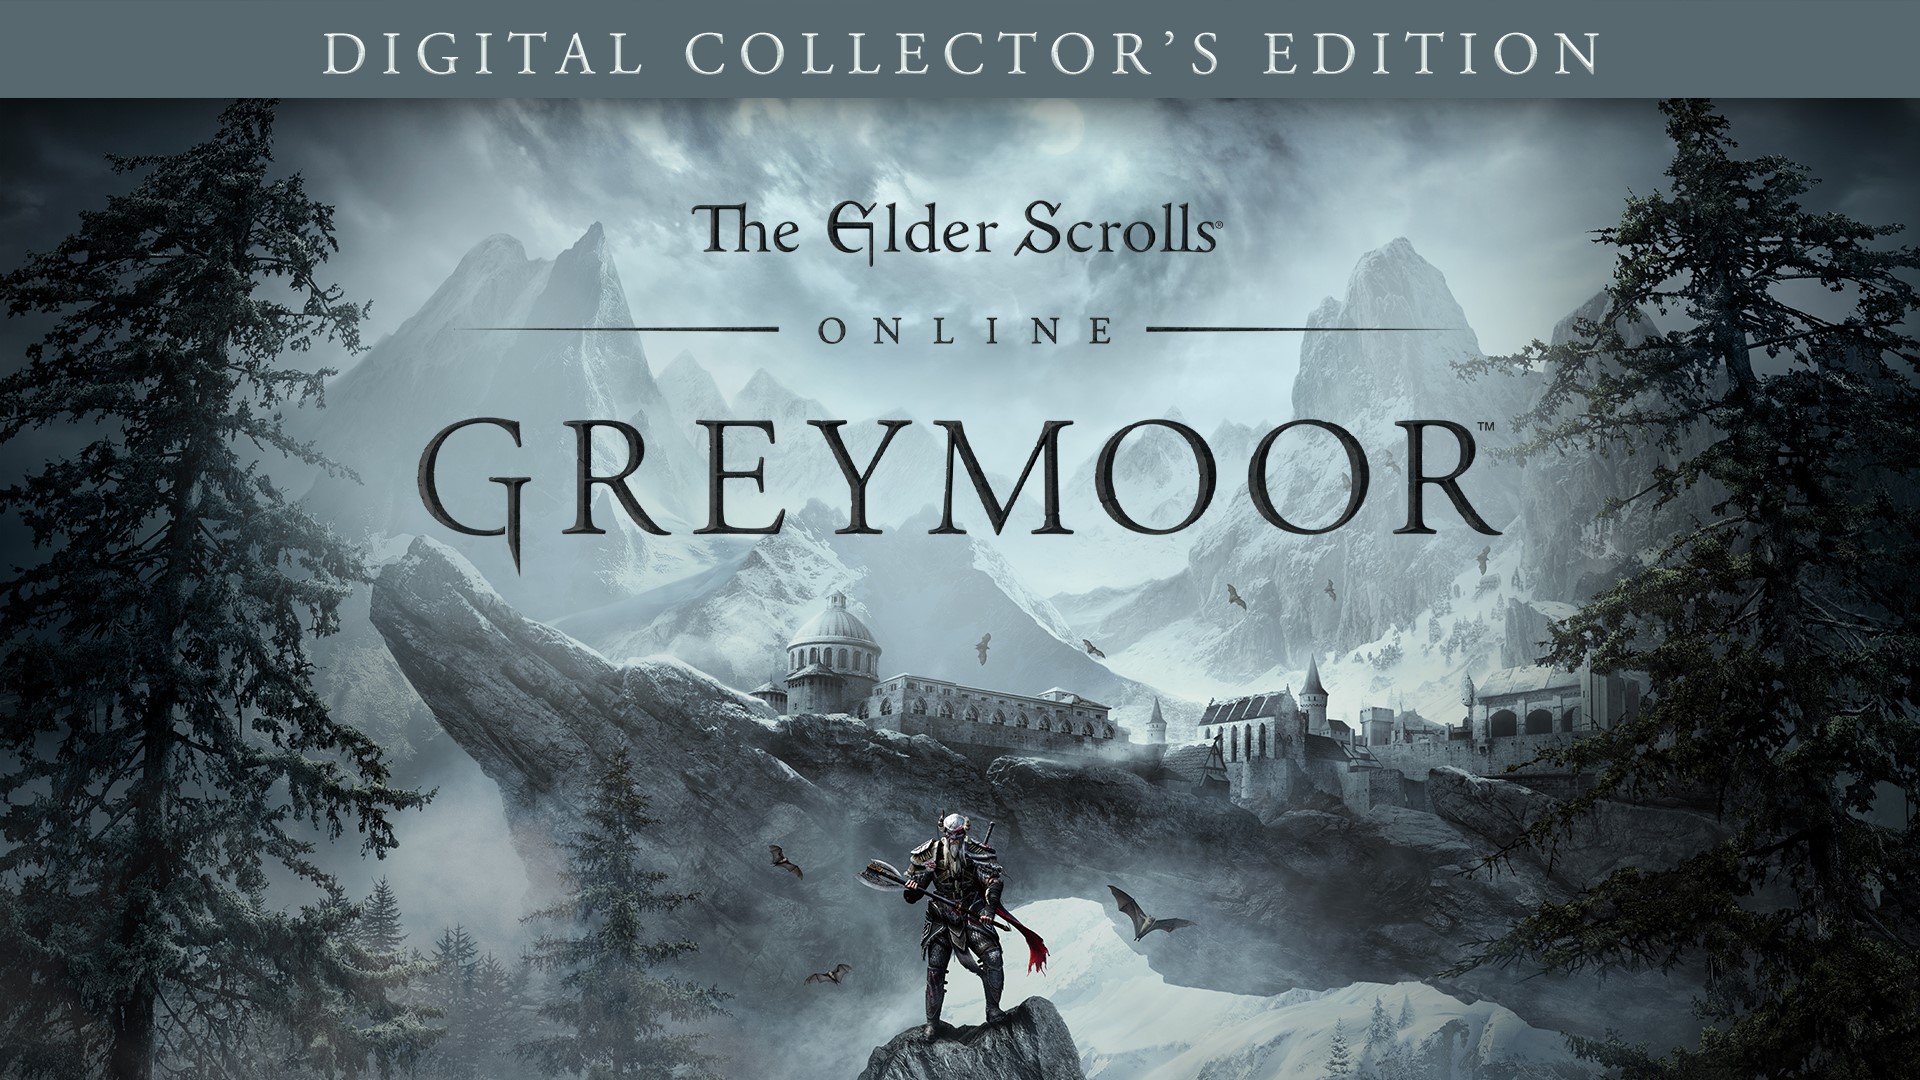 The Elder Scrolls Online - Greymoor Digital Collector's